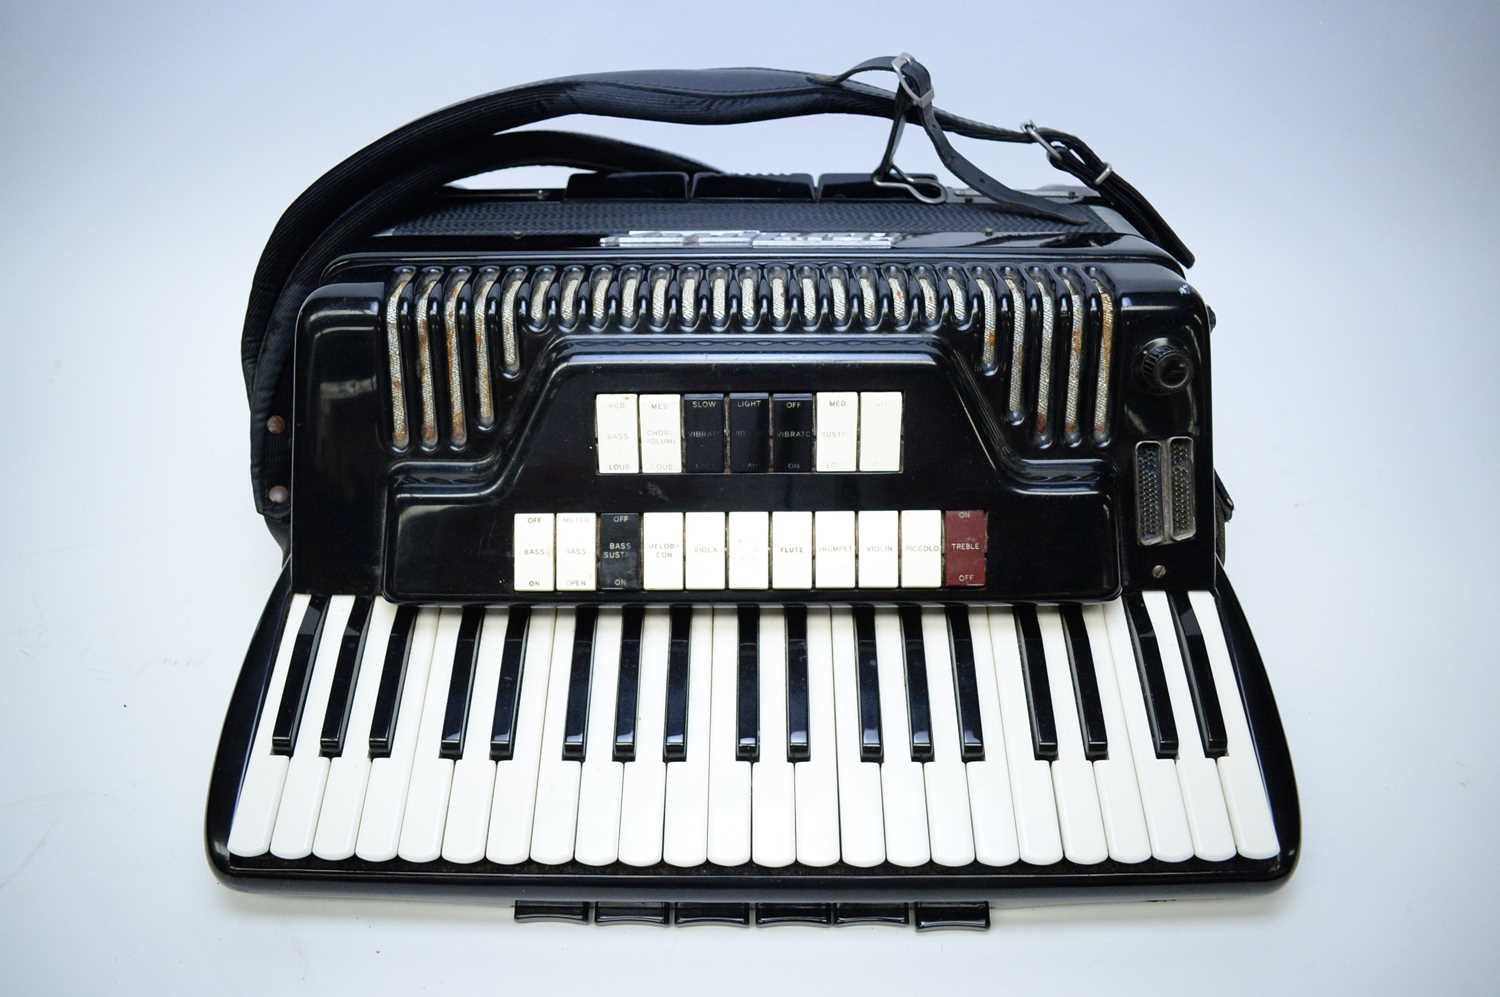 Lot 579 - Condovox Piano accordion